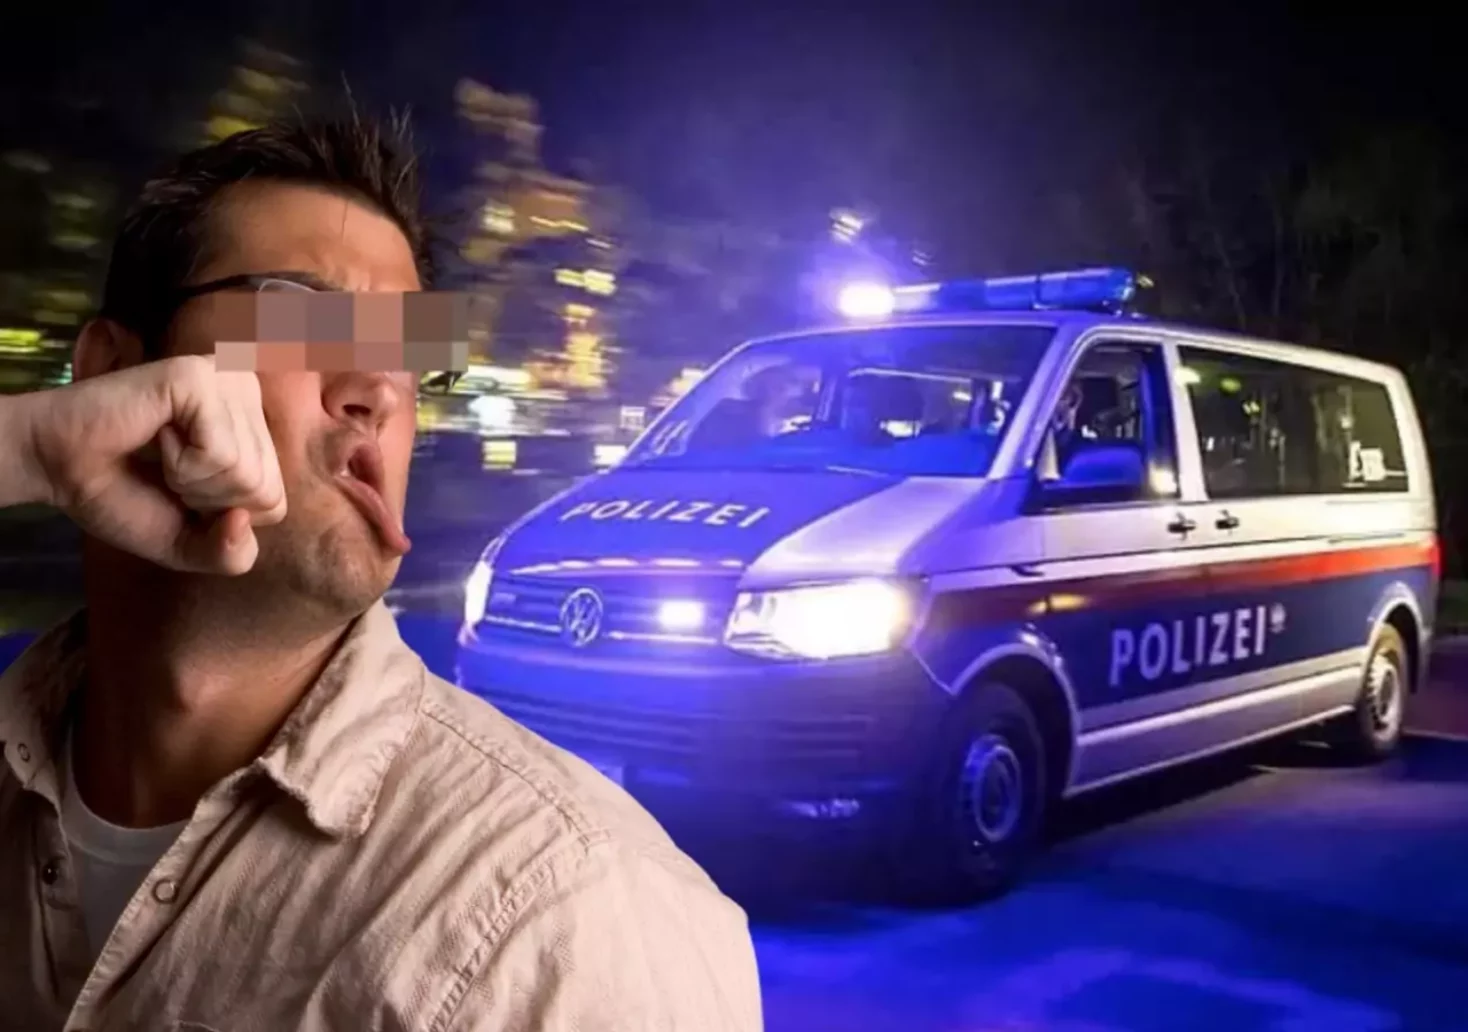 Bild auf 5min.at zeigt einen Mann, dem mit der Faust ins Gesicht geschlagen wird, und im Hintergrund ein Polizeiauto mit Blaulicht.